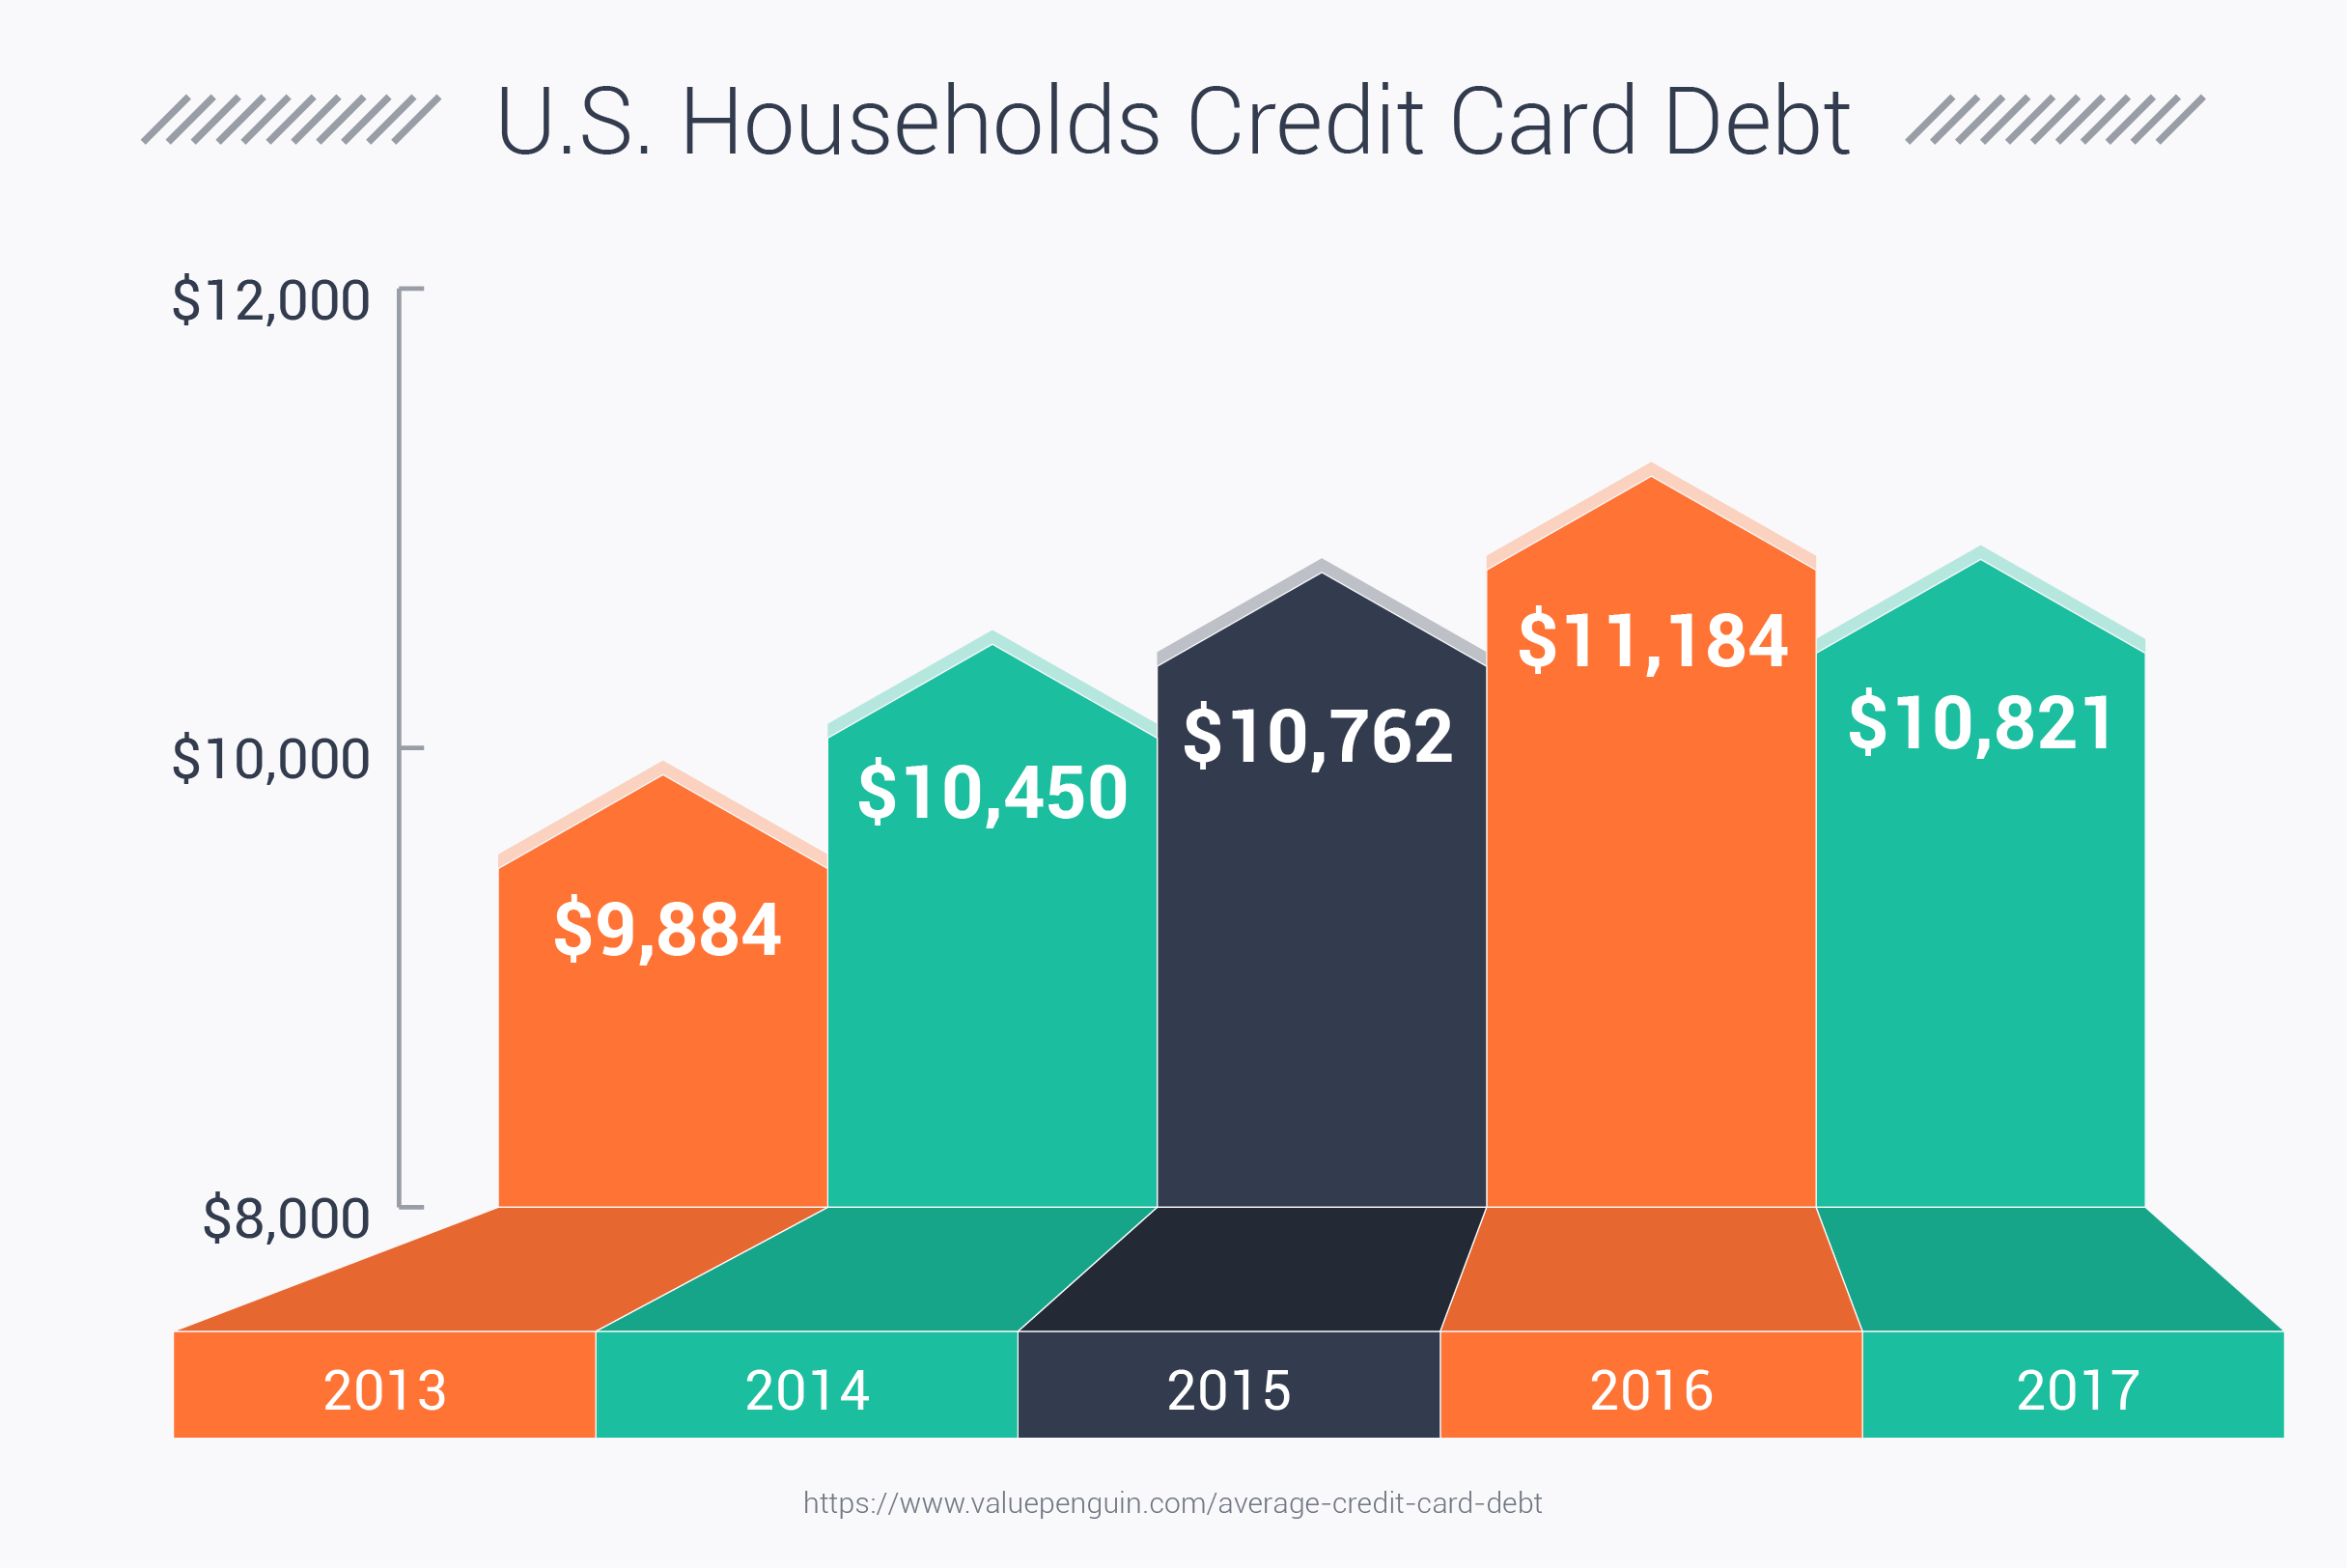 U.S. Households Credit Card Debt